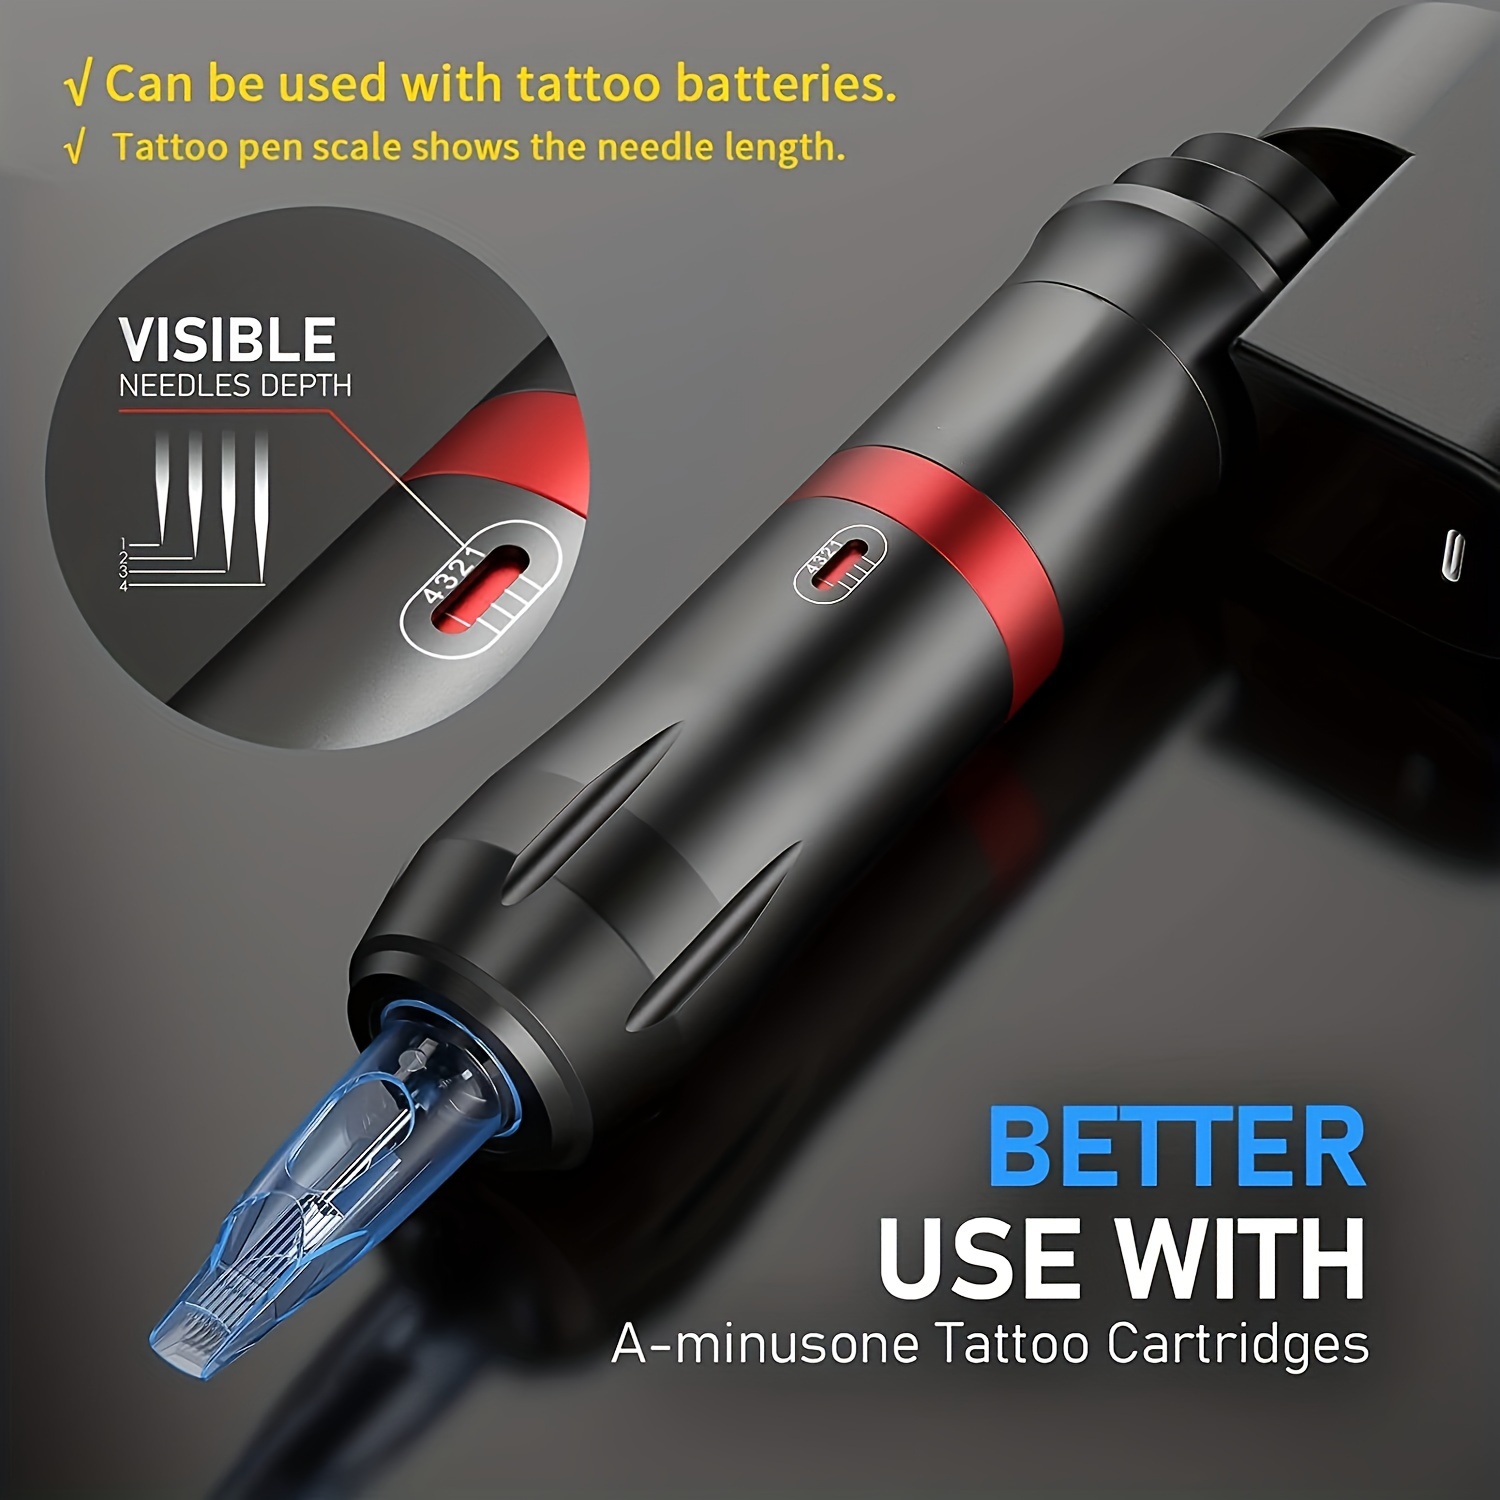 Tattoo Pen Kit ,Wireless Tattoo Machine Kit, With Tattoo Power Supply And  20 Pcs Tattoo Cartridge Needles, Complete Tattoo Kit Tattoo Supplies For Beg